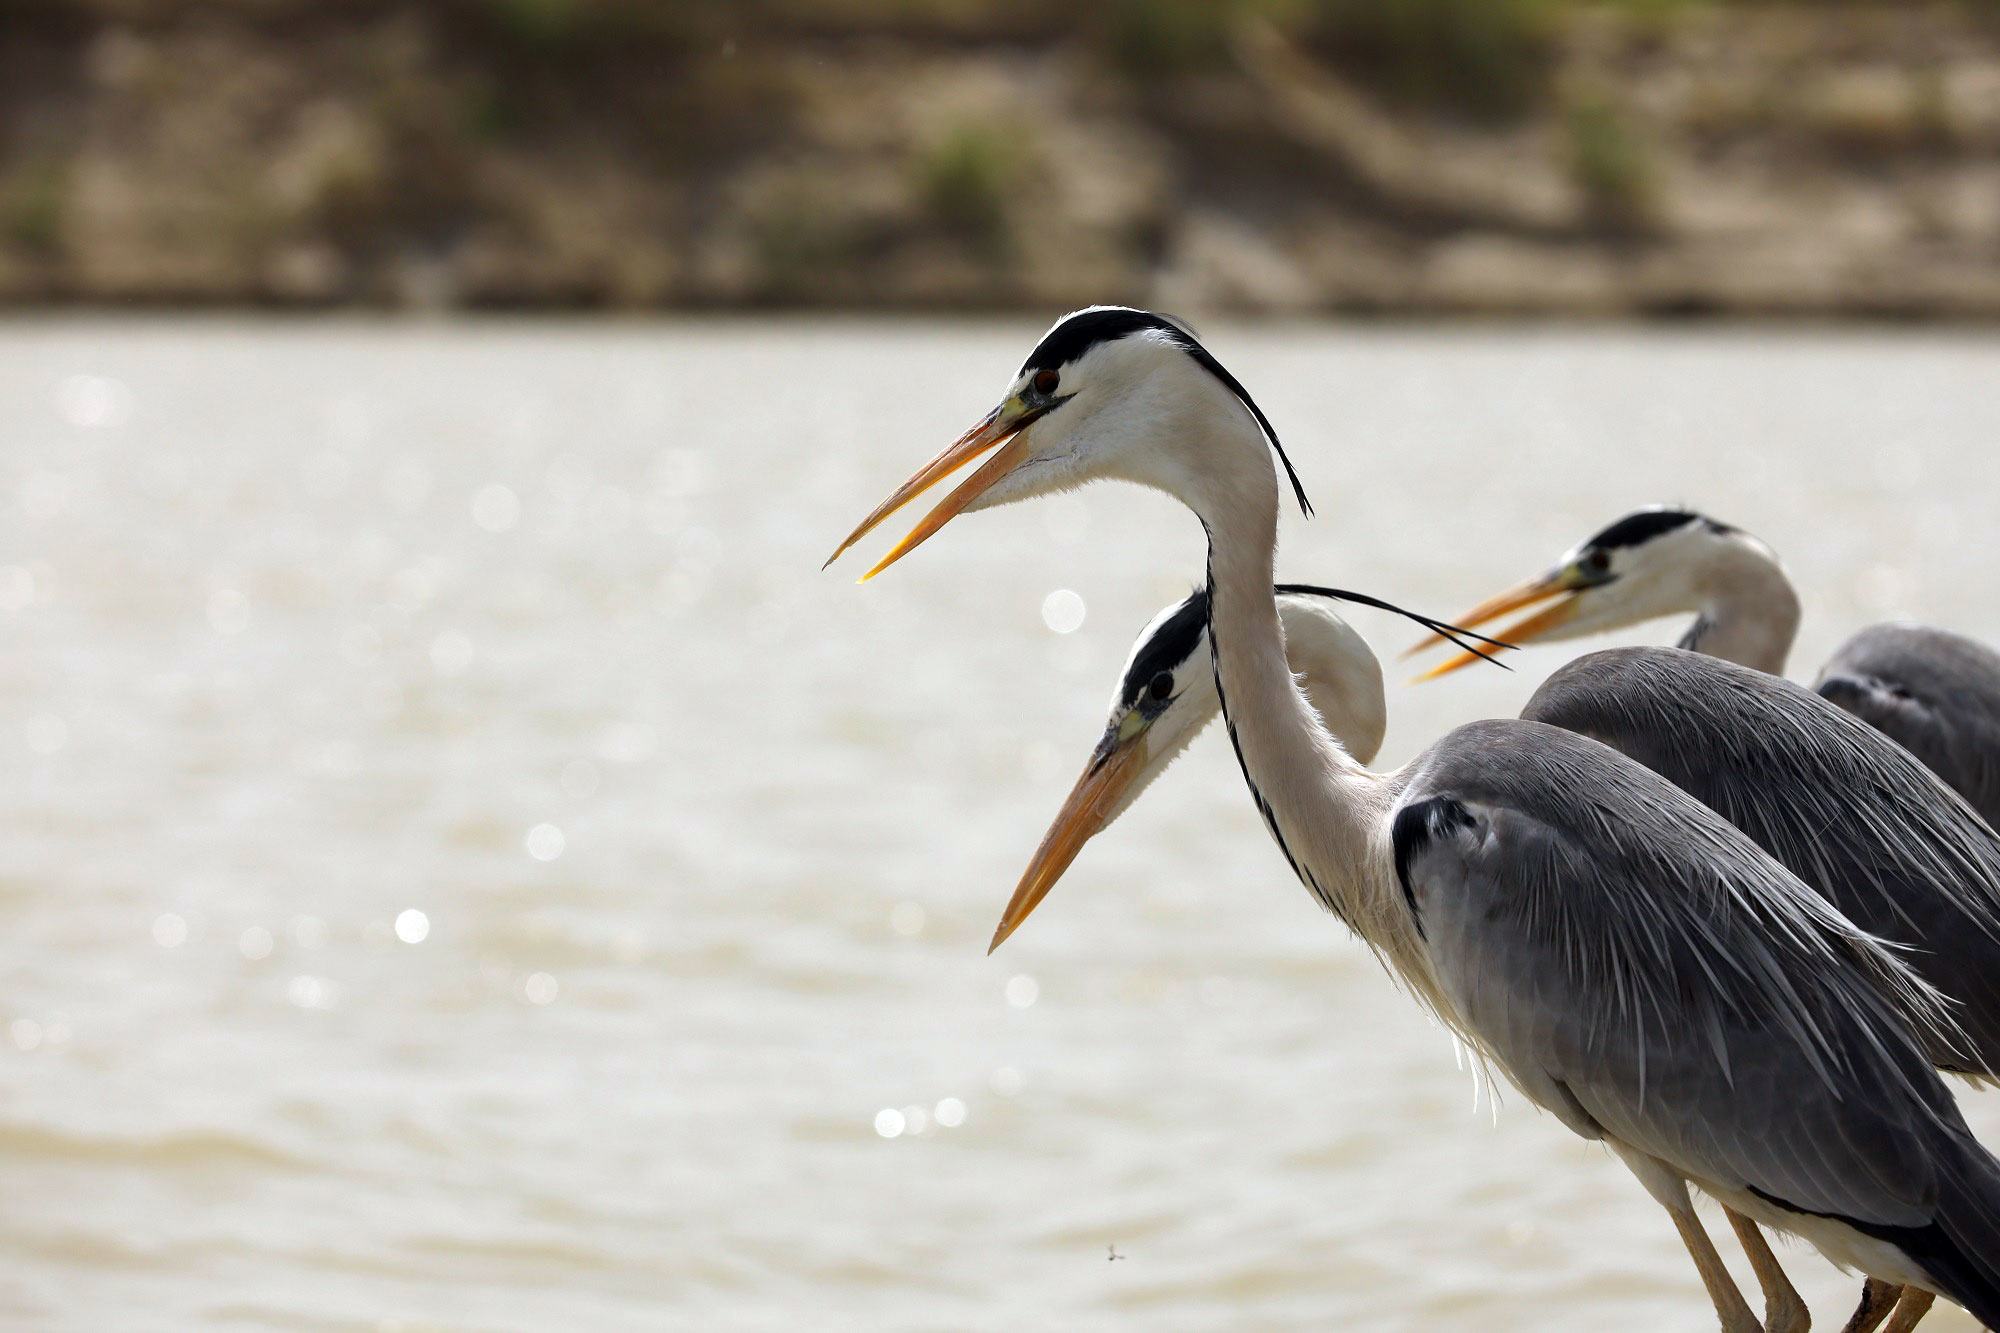 सर्दियों के मौसम में सिंधु नदी पर, प्रवासी पक्षियों की कई प्रजातियाँ नज़र आती हैं.